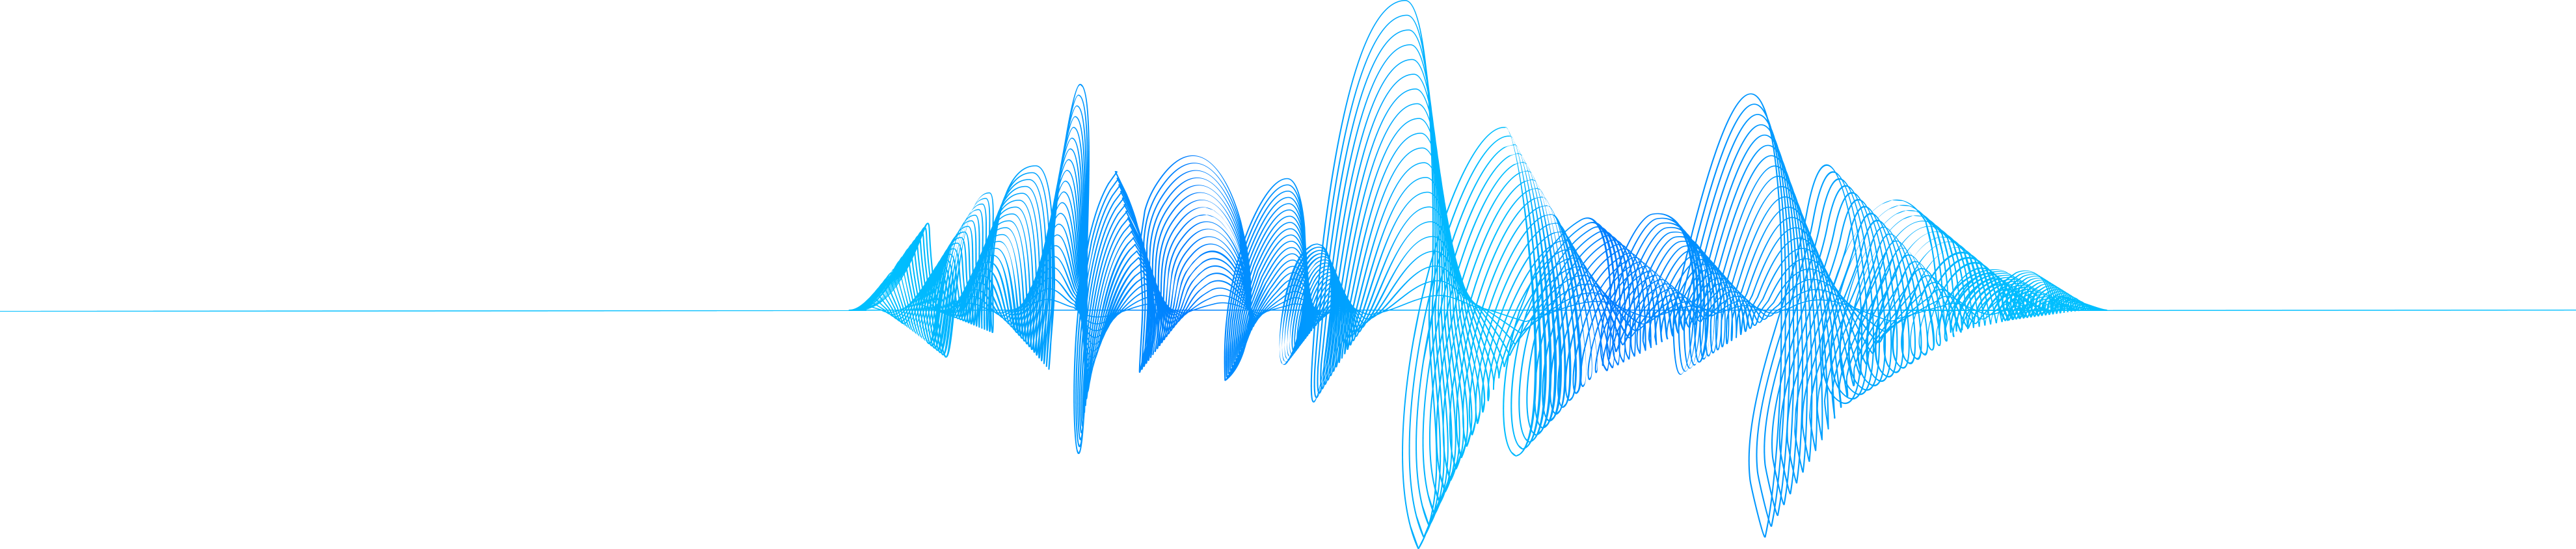 Blue Soundwave Visualization